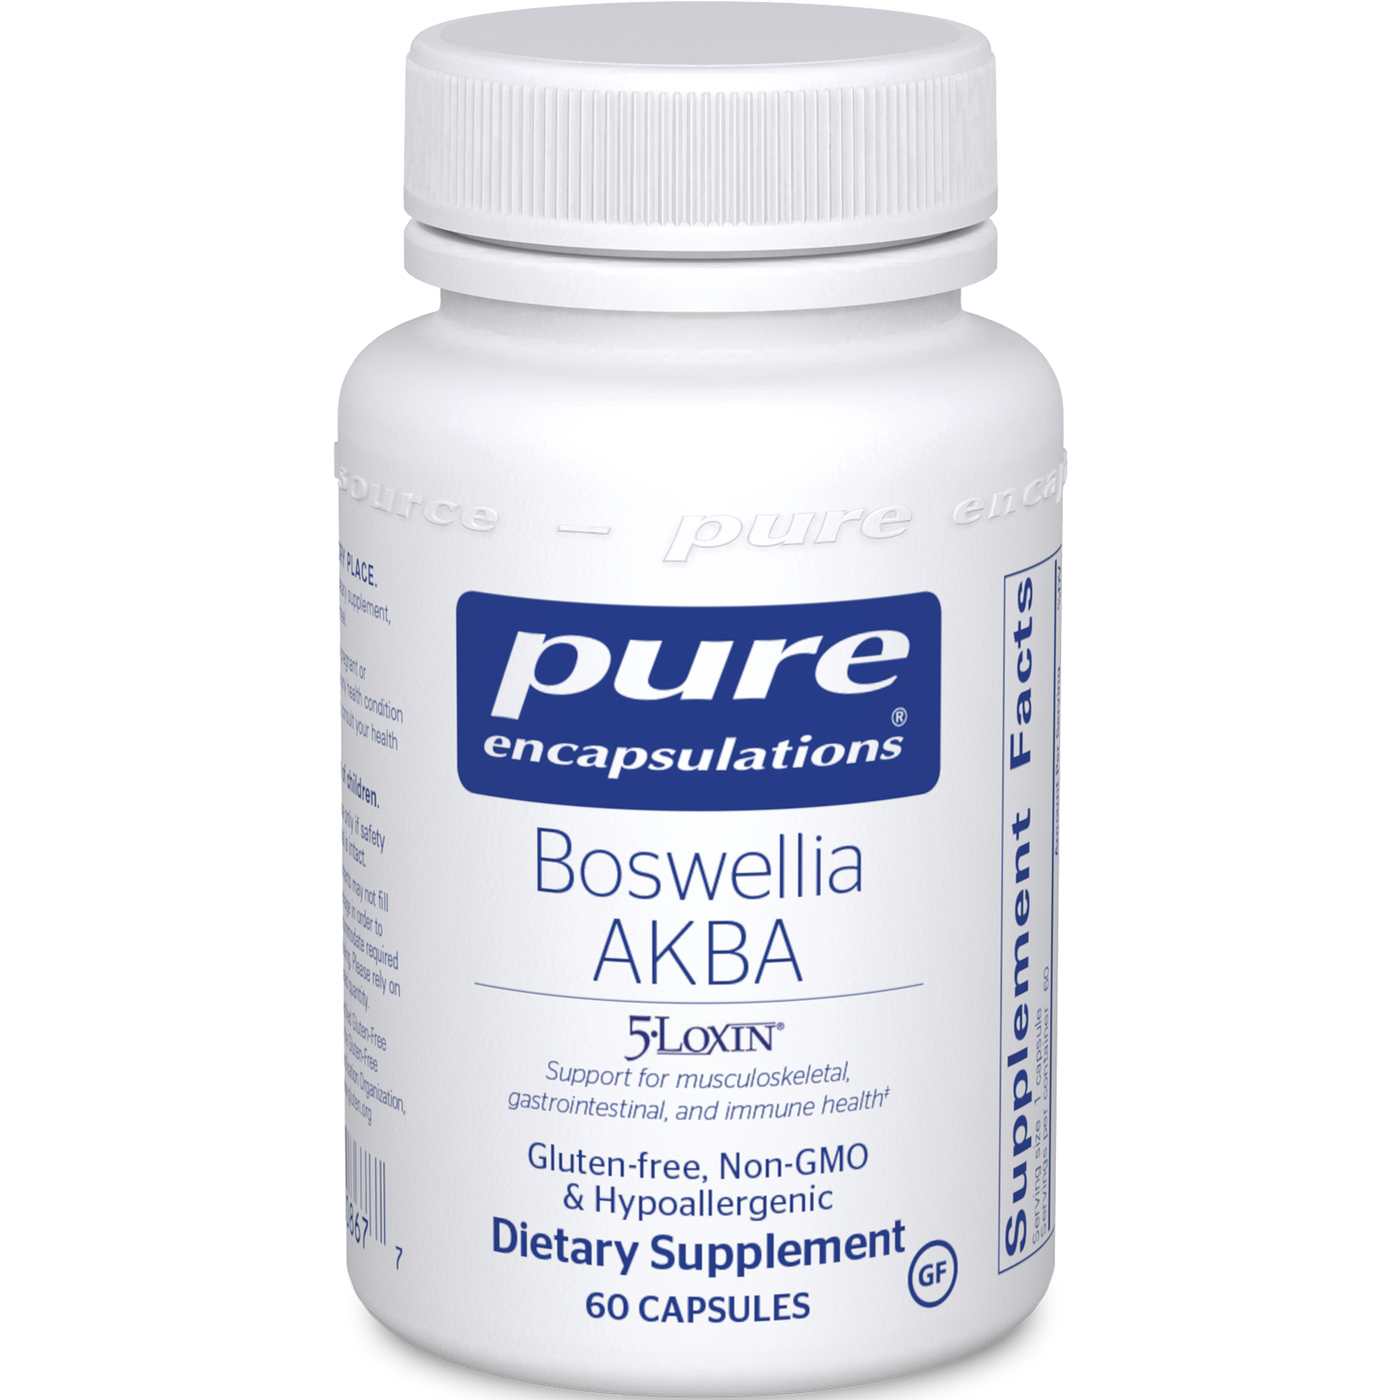 Boswellia AKBA 60 vcaps Curated Wellness